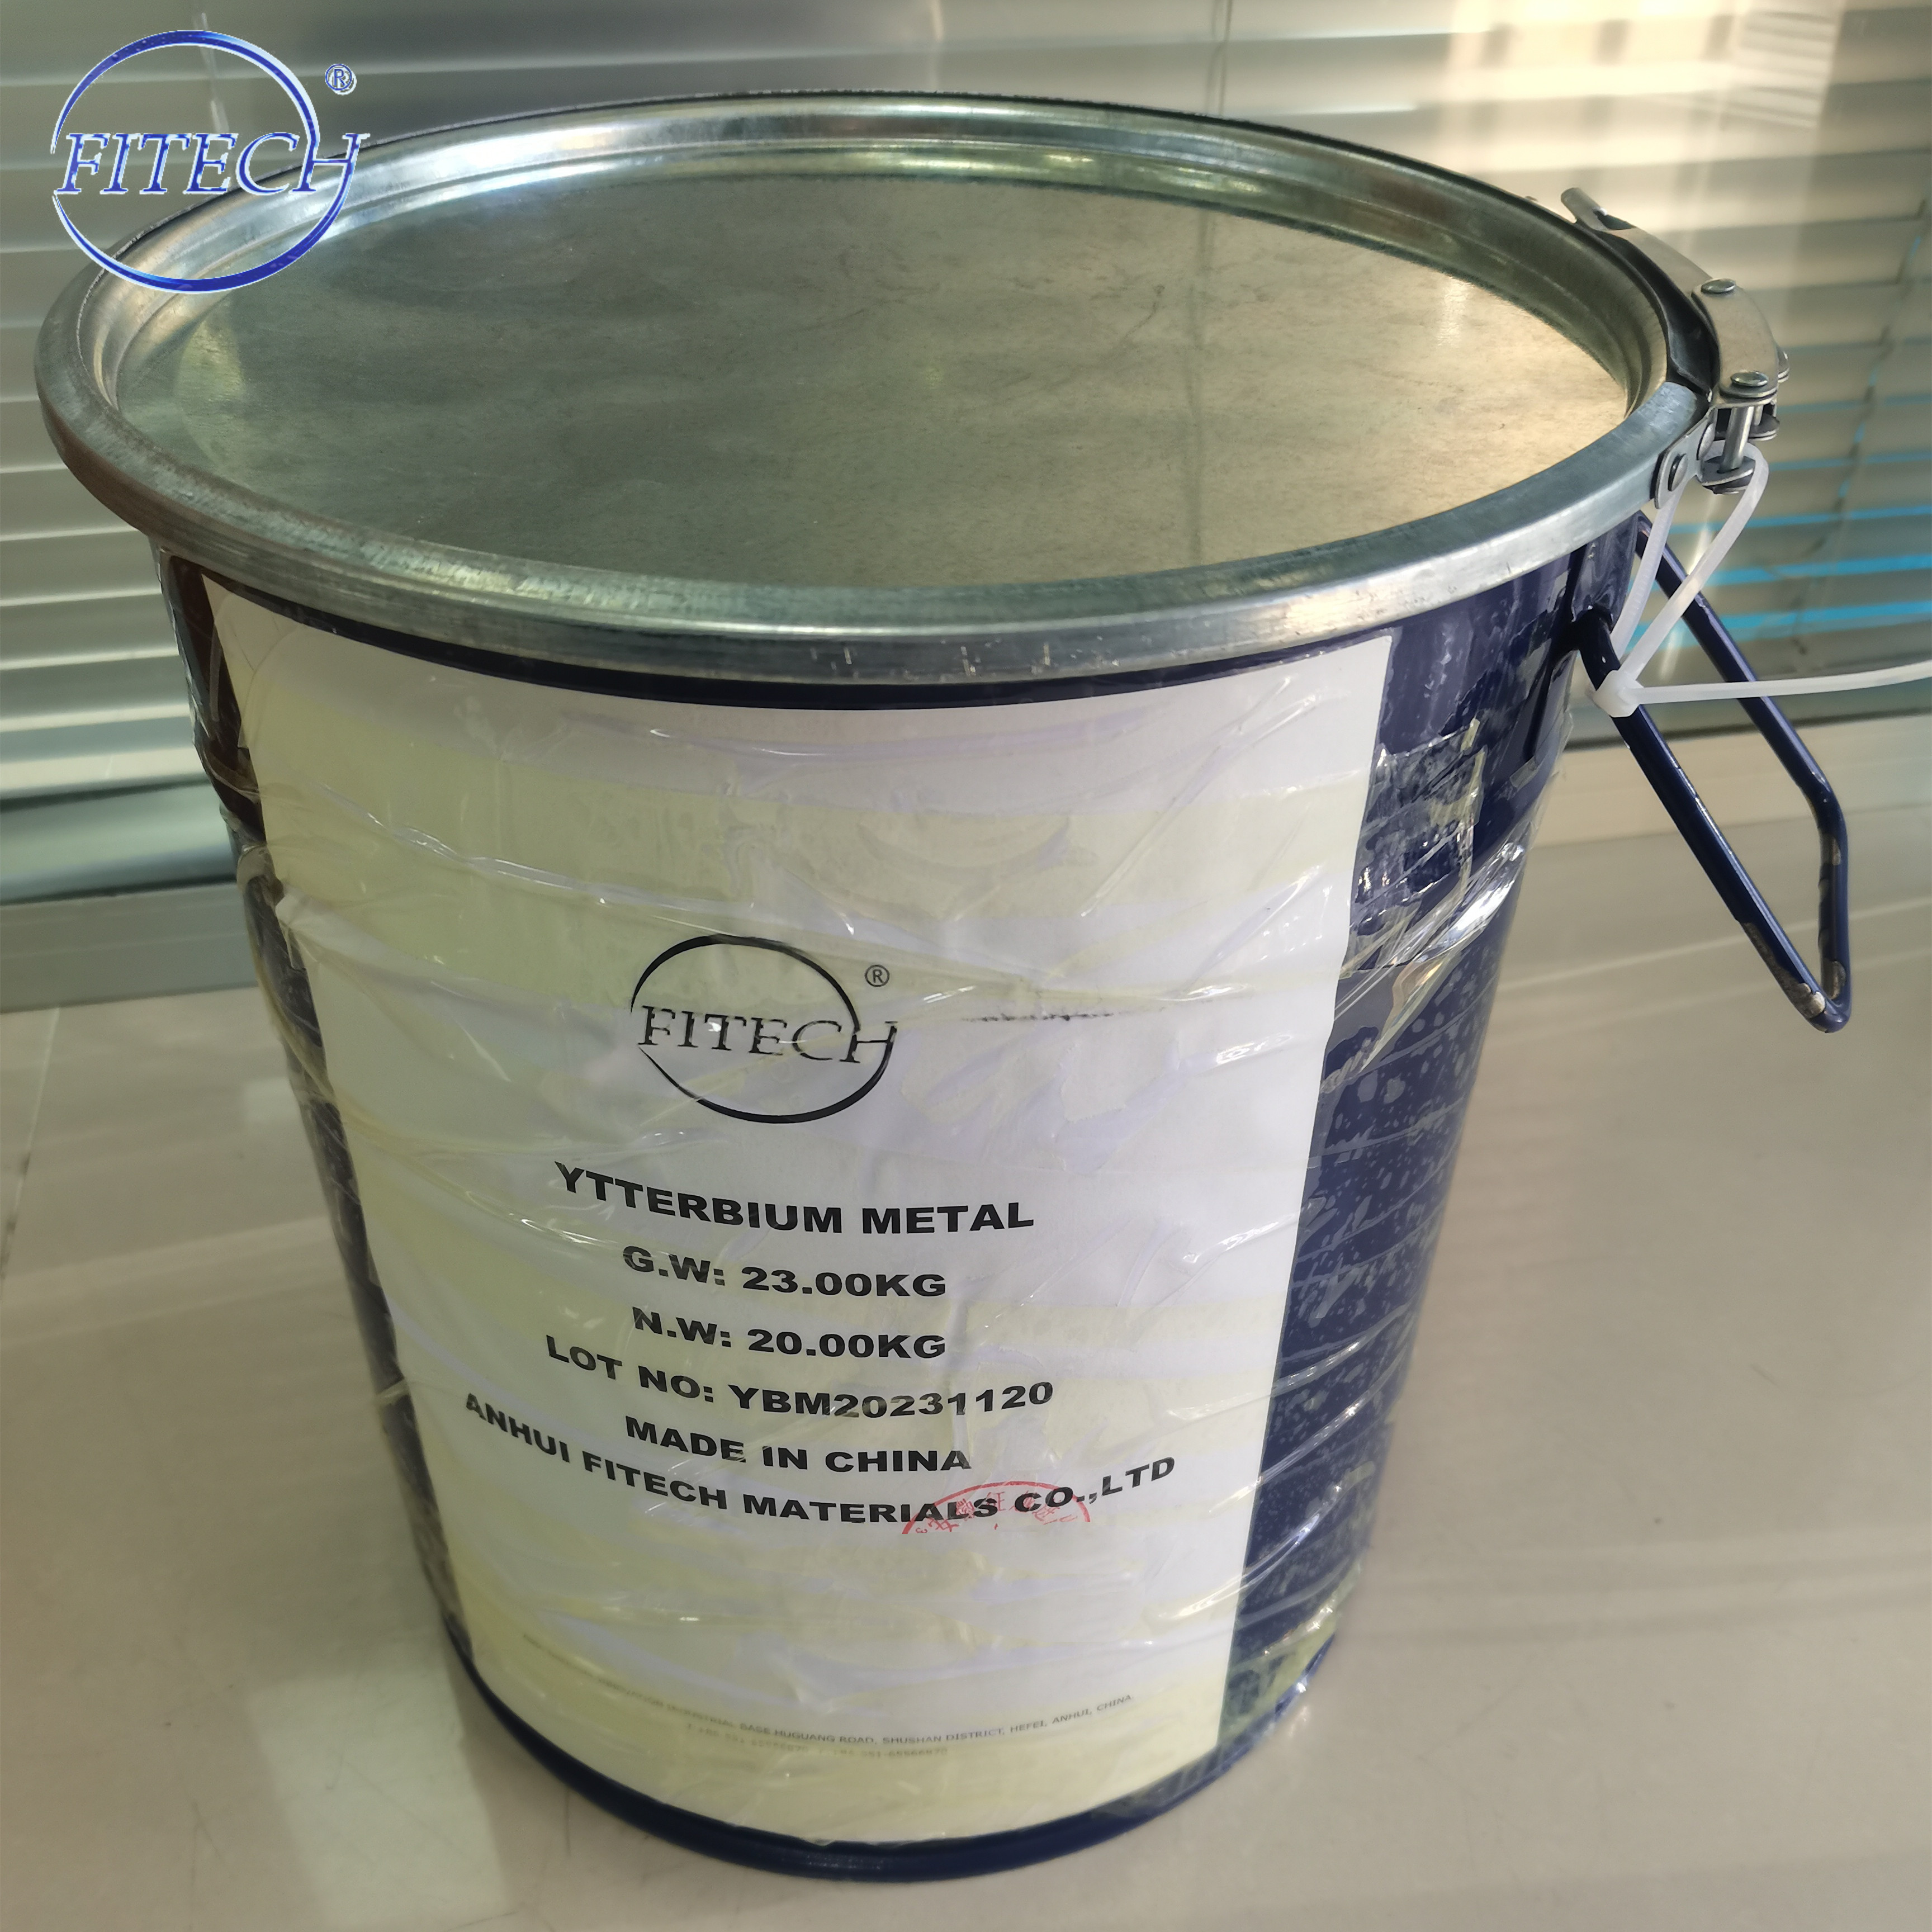 ytterbium metal packing